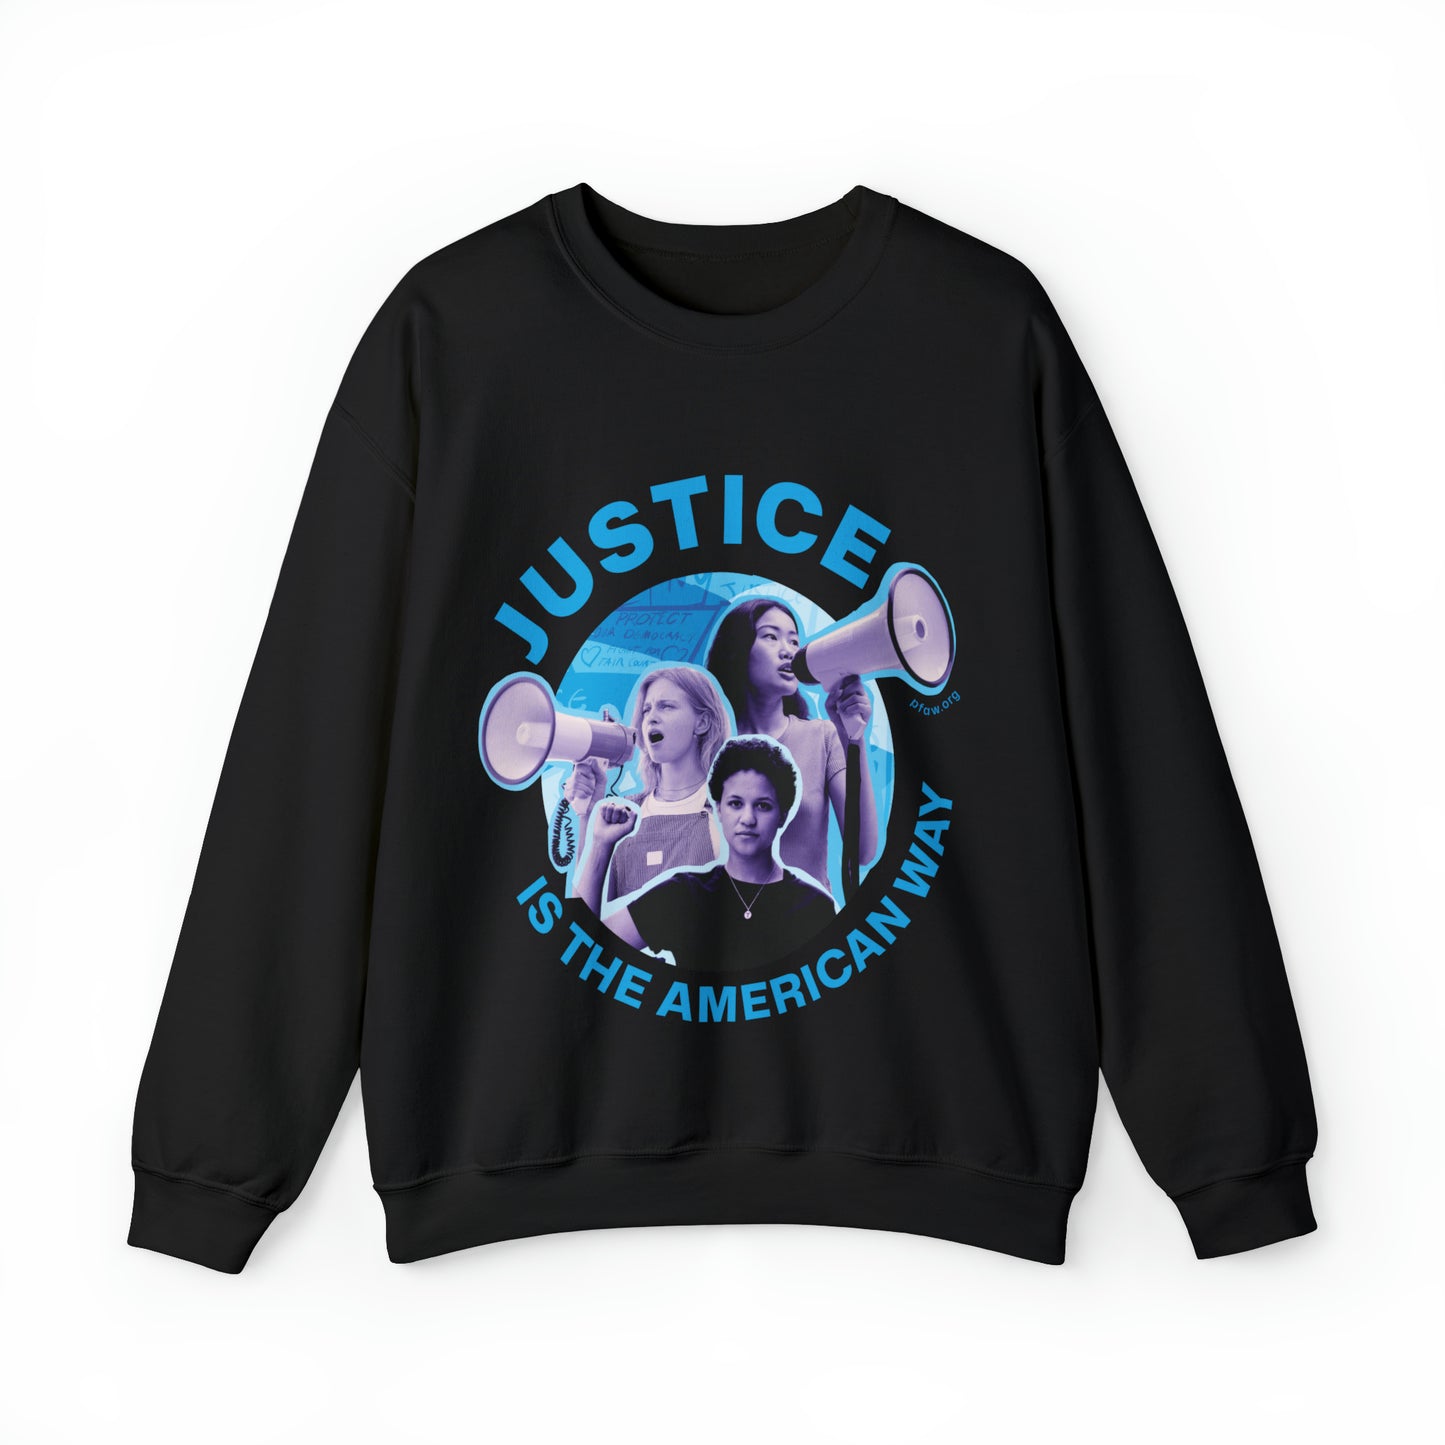 Justice is the American Way Crewneck Sweatshirt